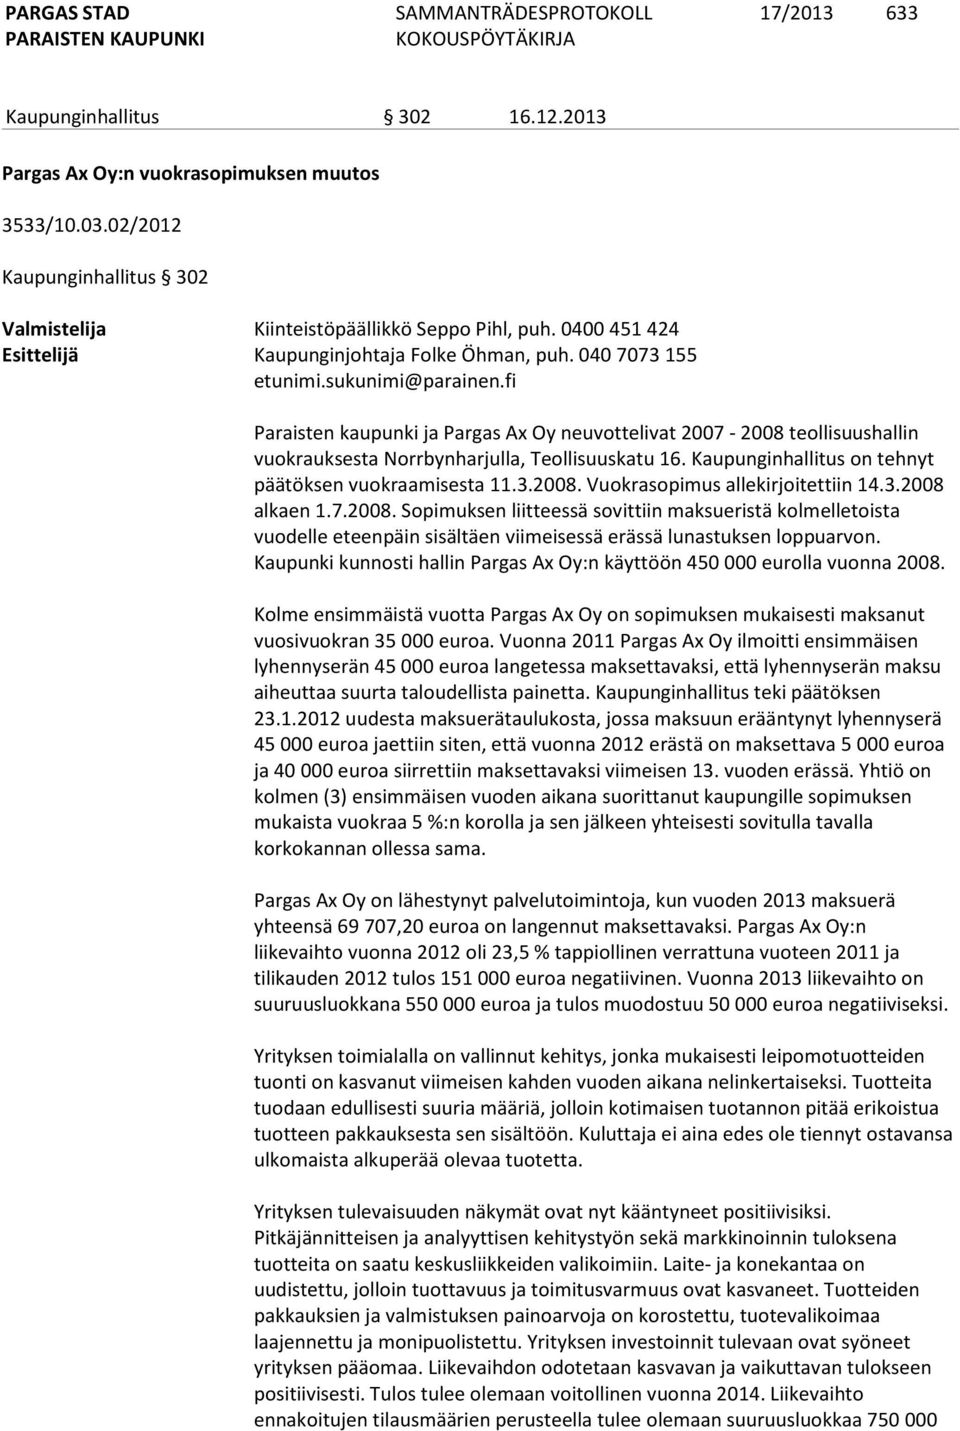 fi Paraisten kaupunki ja Pargas Ax Oy neuvottelivat 2007-2008 teollisuushallin vuokrauksesta Norrbynharjulla, Teollisuuskatu 16. Kaupunginhallitus on tehnyt päätöksen vuokraamisesta 11.3.2008. Vuokrasopimus allekirjoitettiin 14.